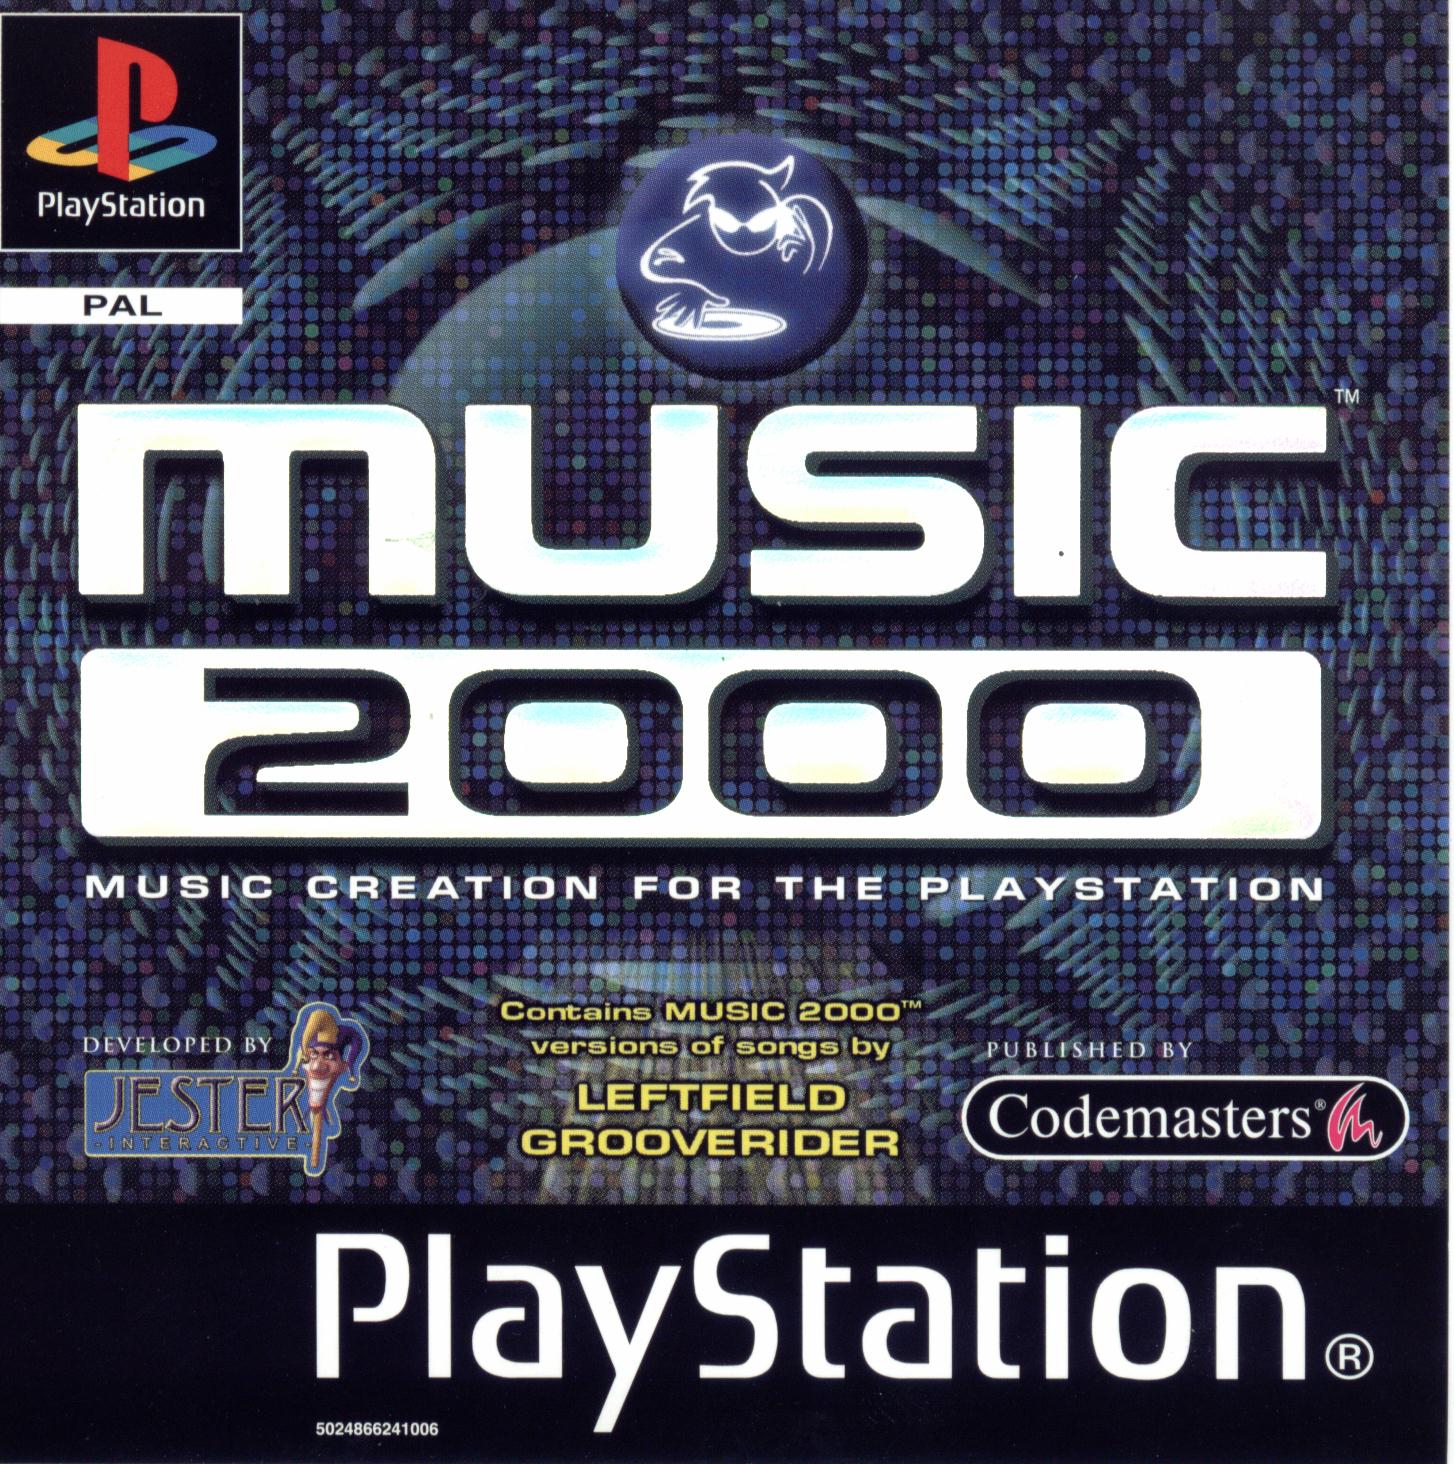 jaquette du jeu vidéo Music 2000